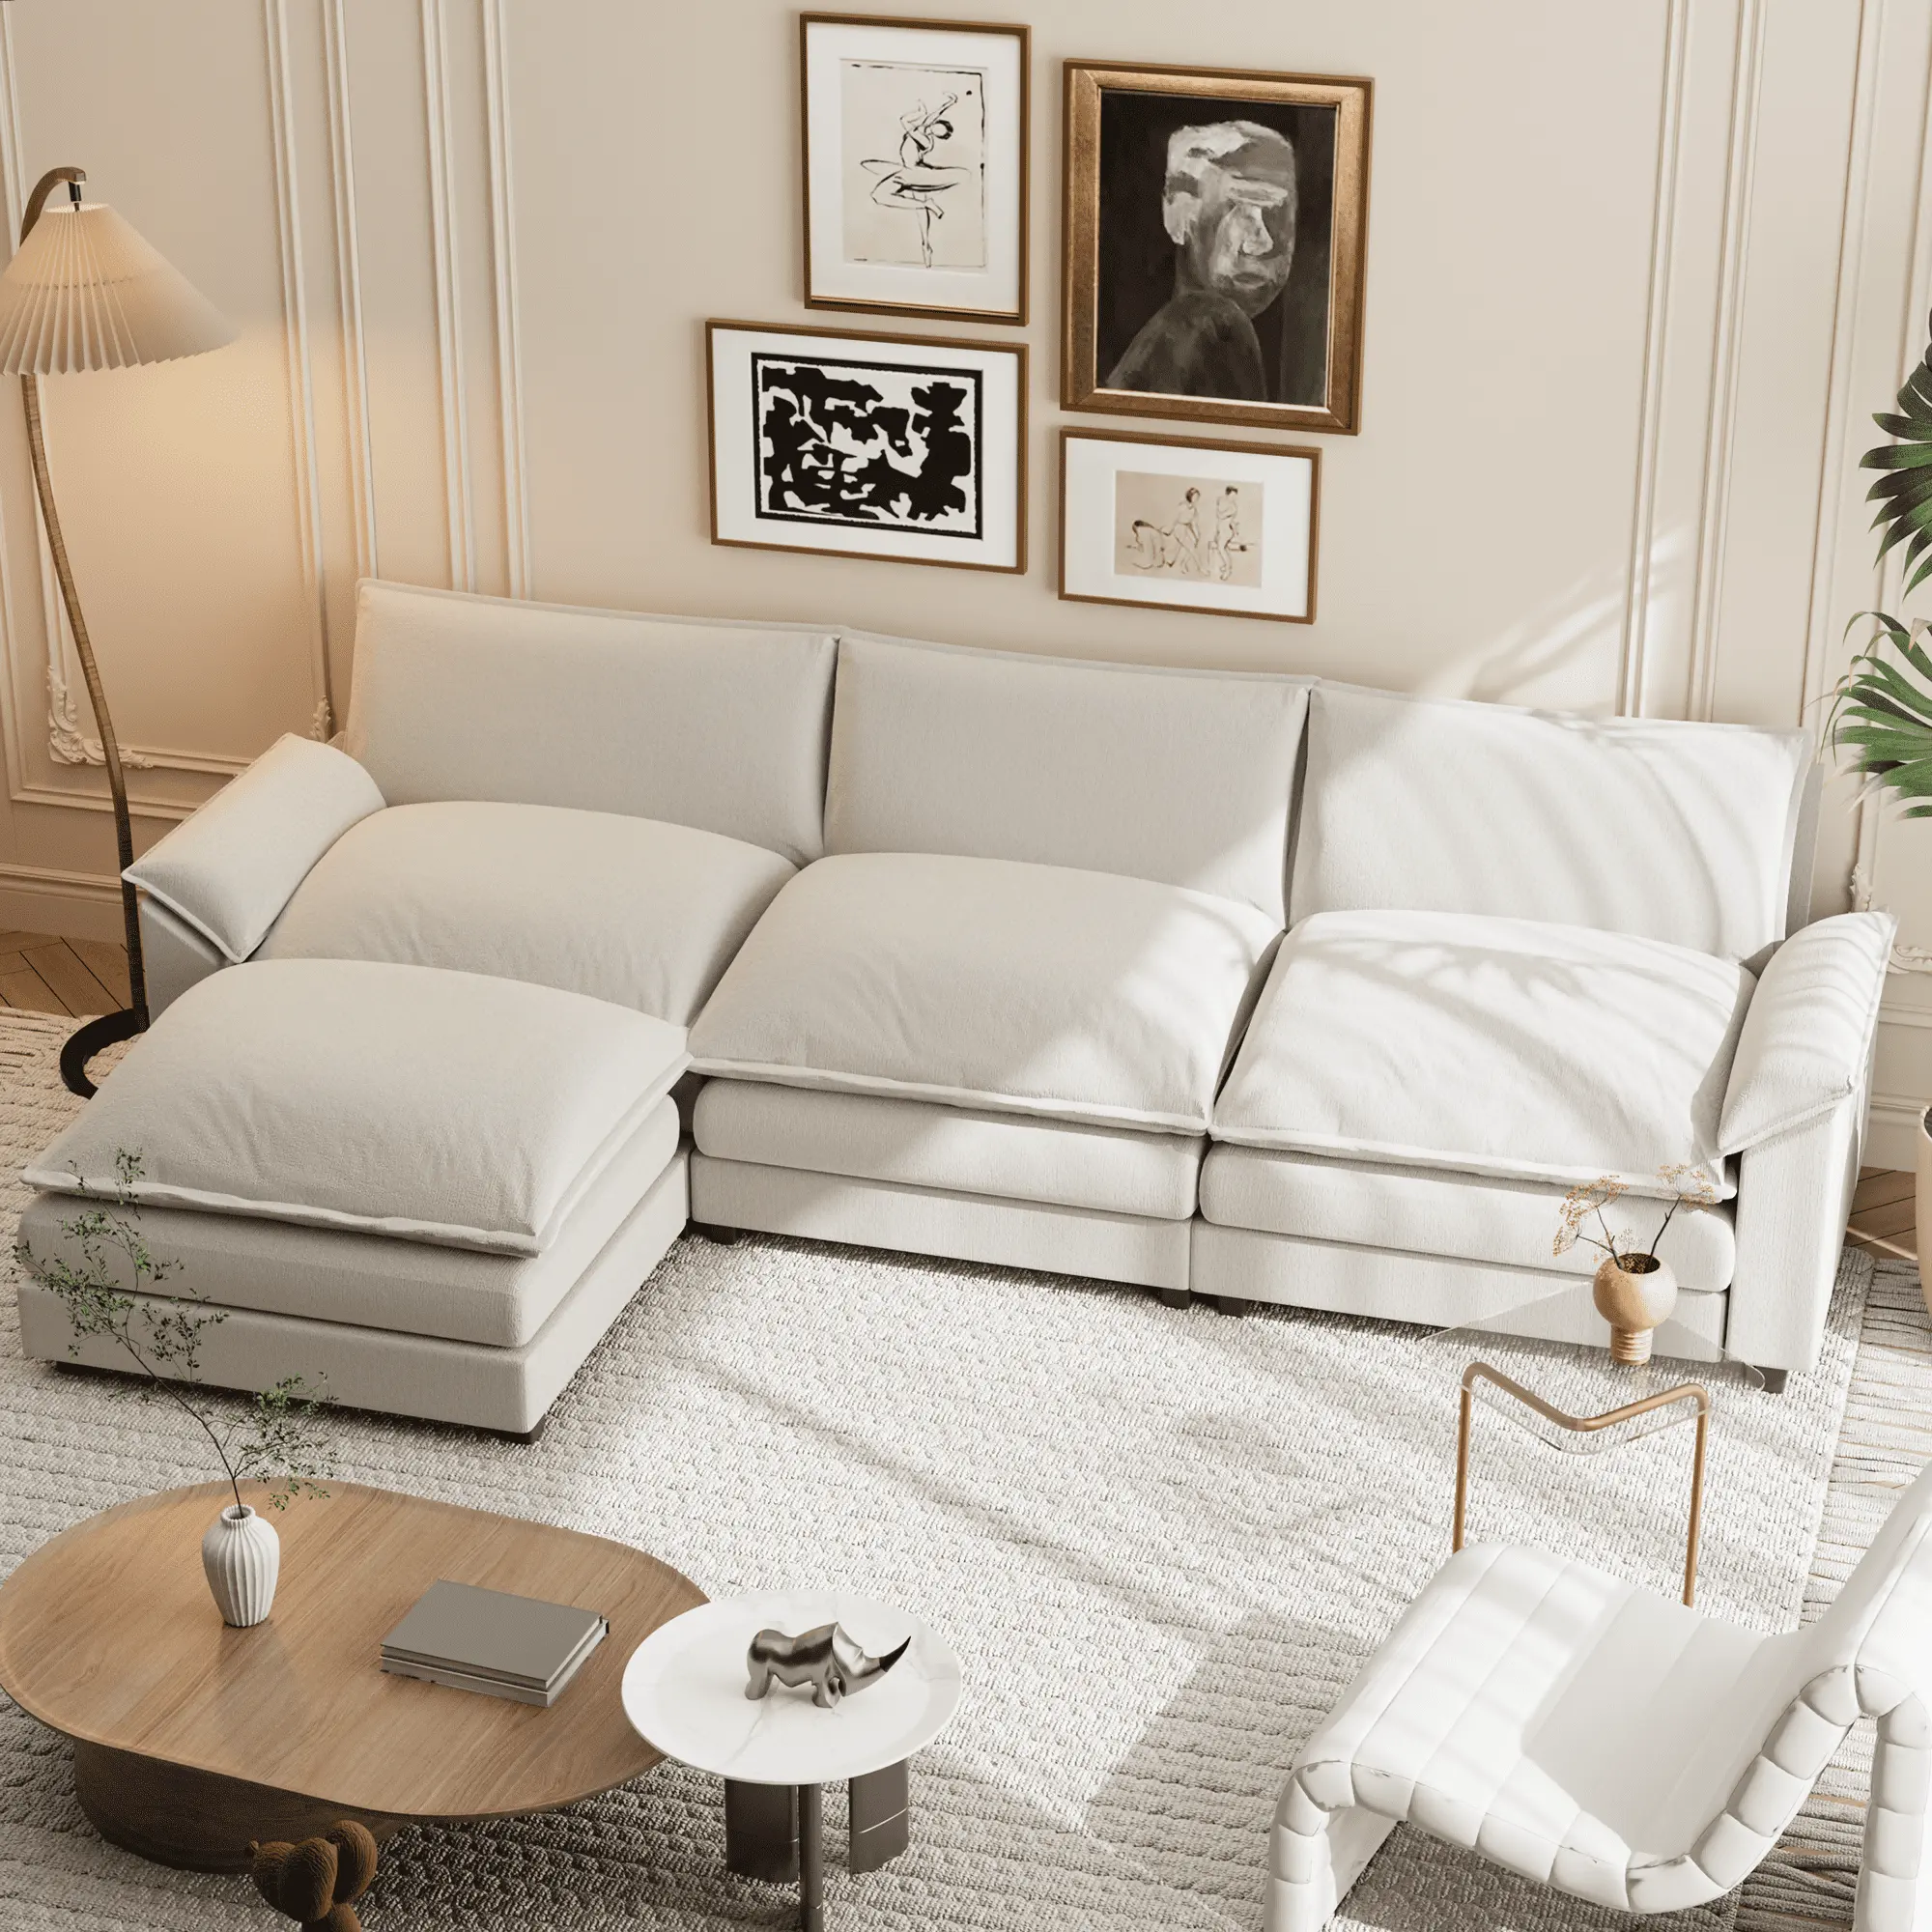 Juego de sofás seccionales modulares de lujo para sala de estar moderna de estilo europeo nórdico ATUNUS